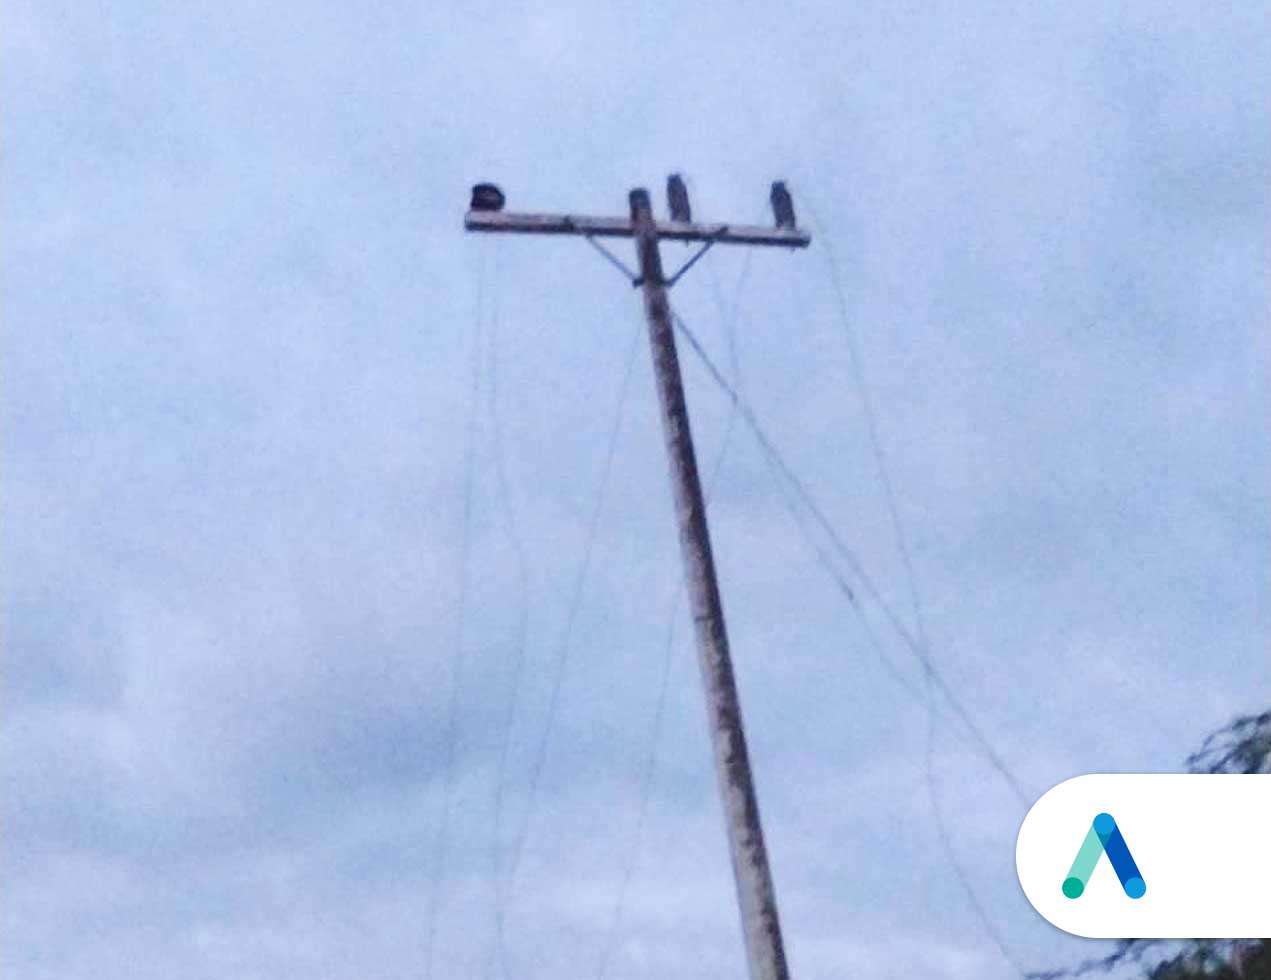 Nuevo robo de cables eléctricos  en zona rural de Campeche